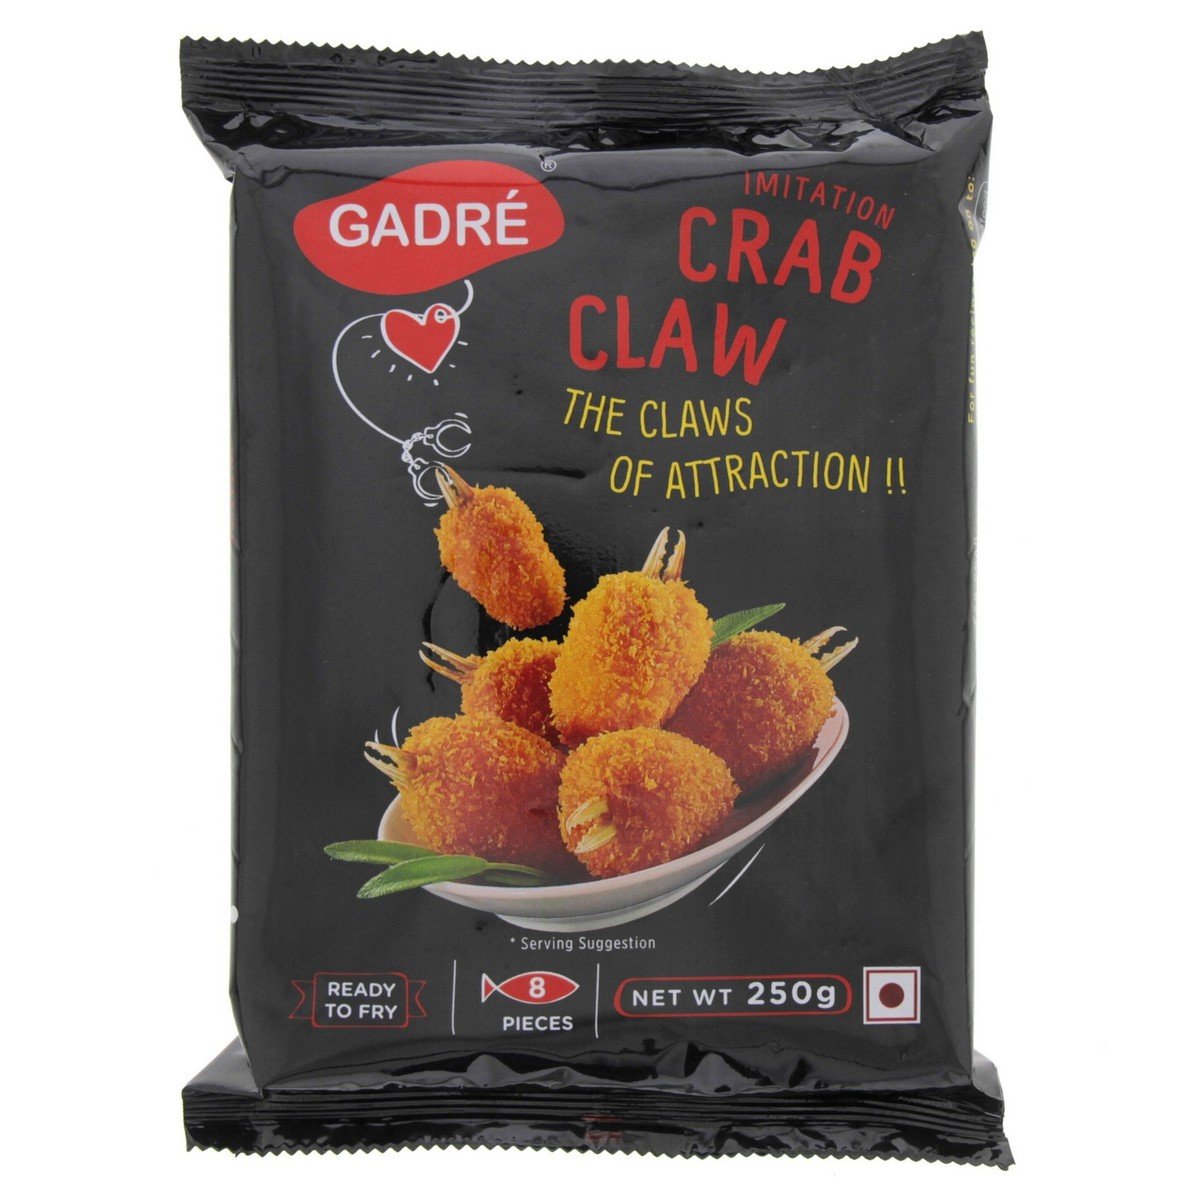 Gadre Imitation Crab Claws 250 g 8 pcs